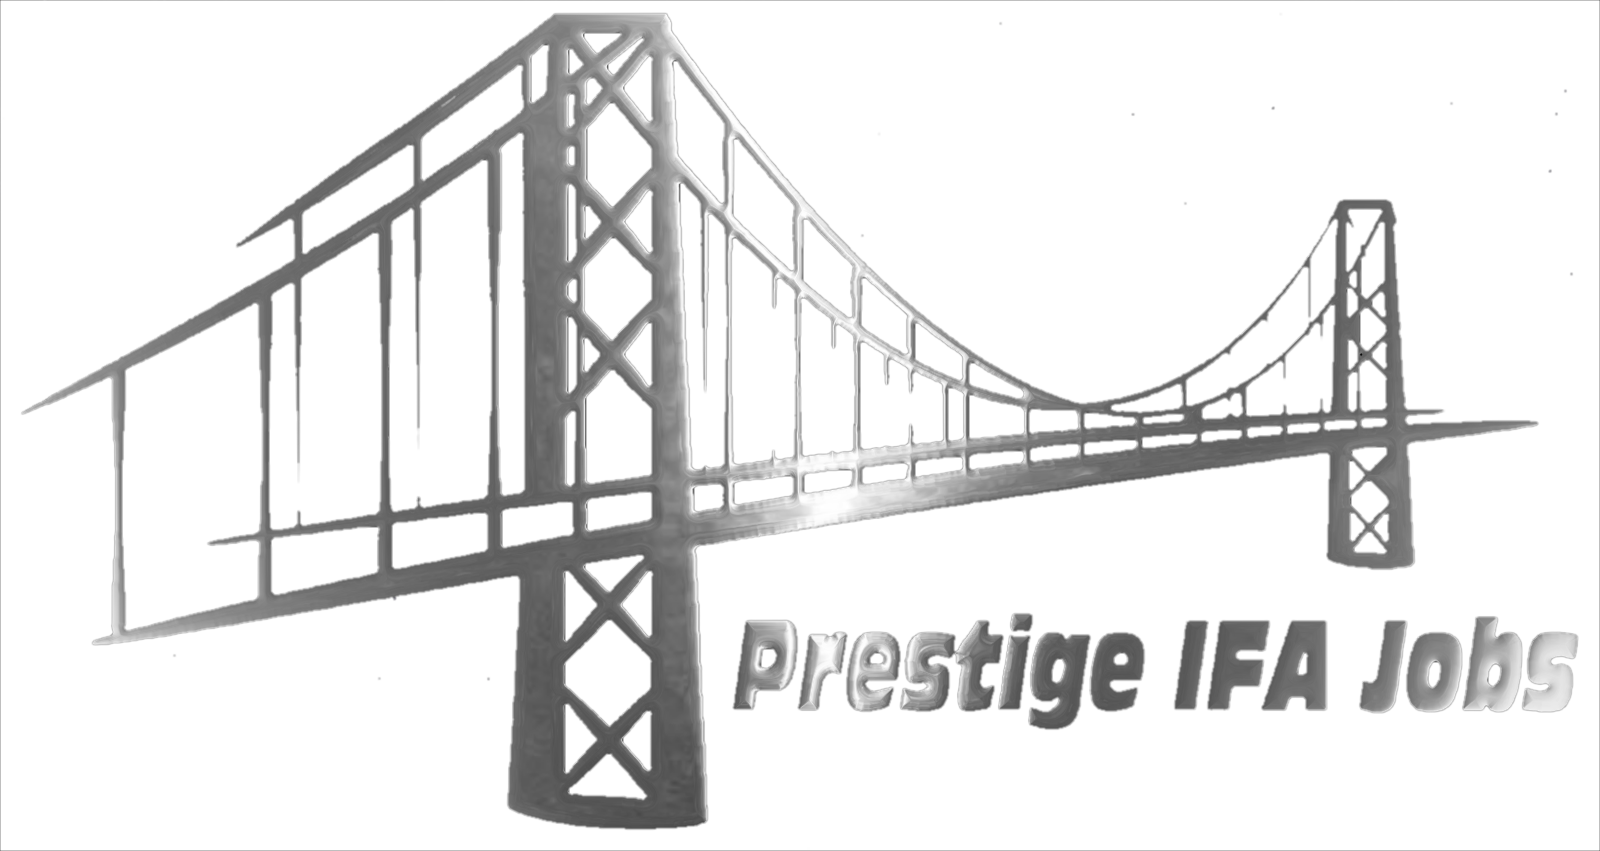 Prestige IFA Jobs